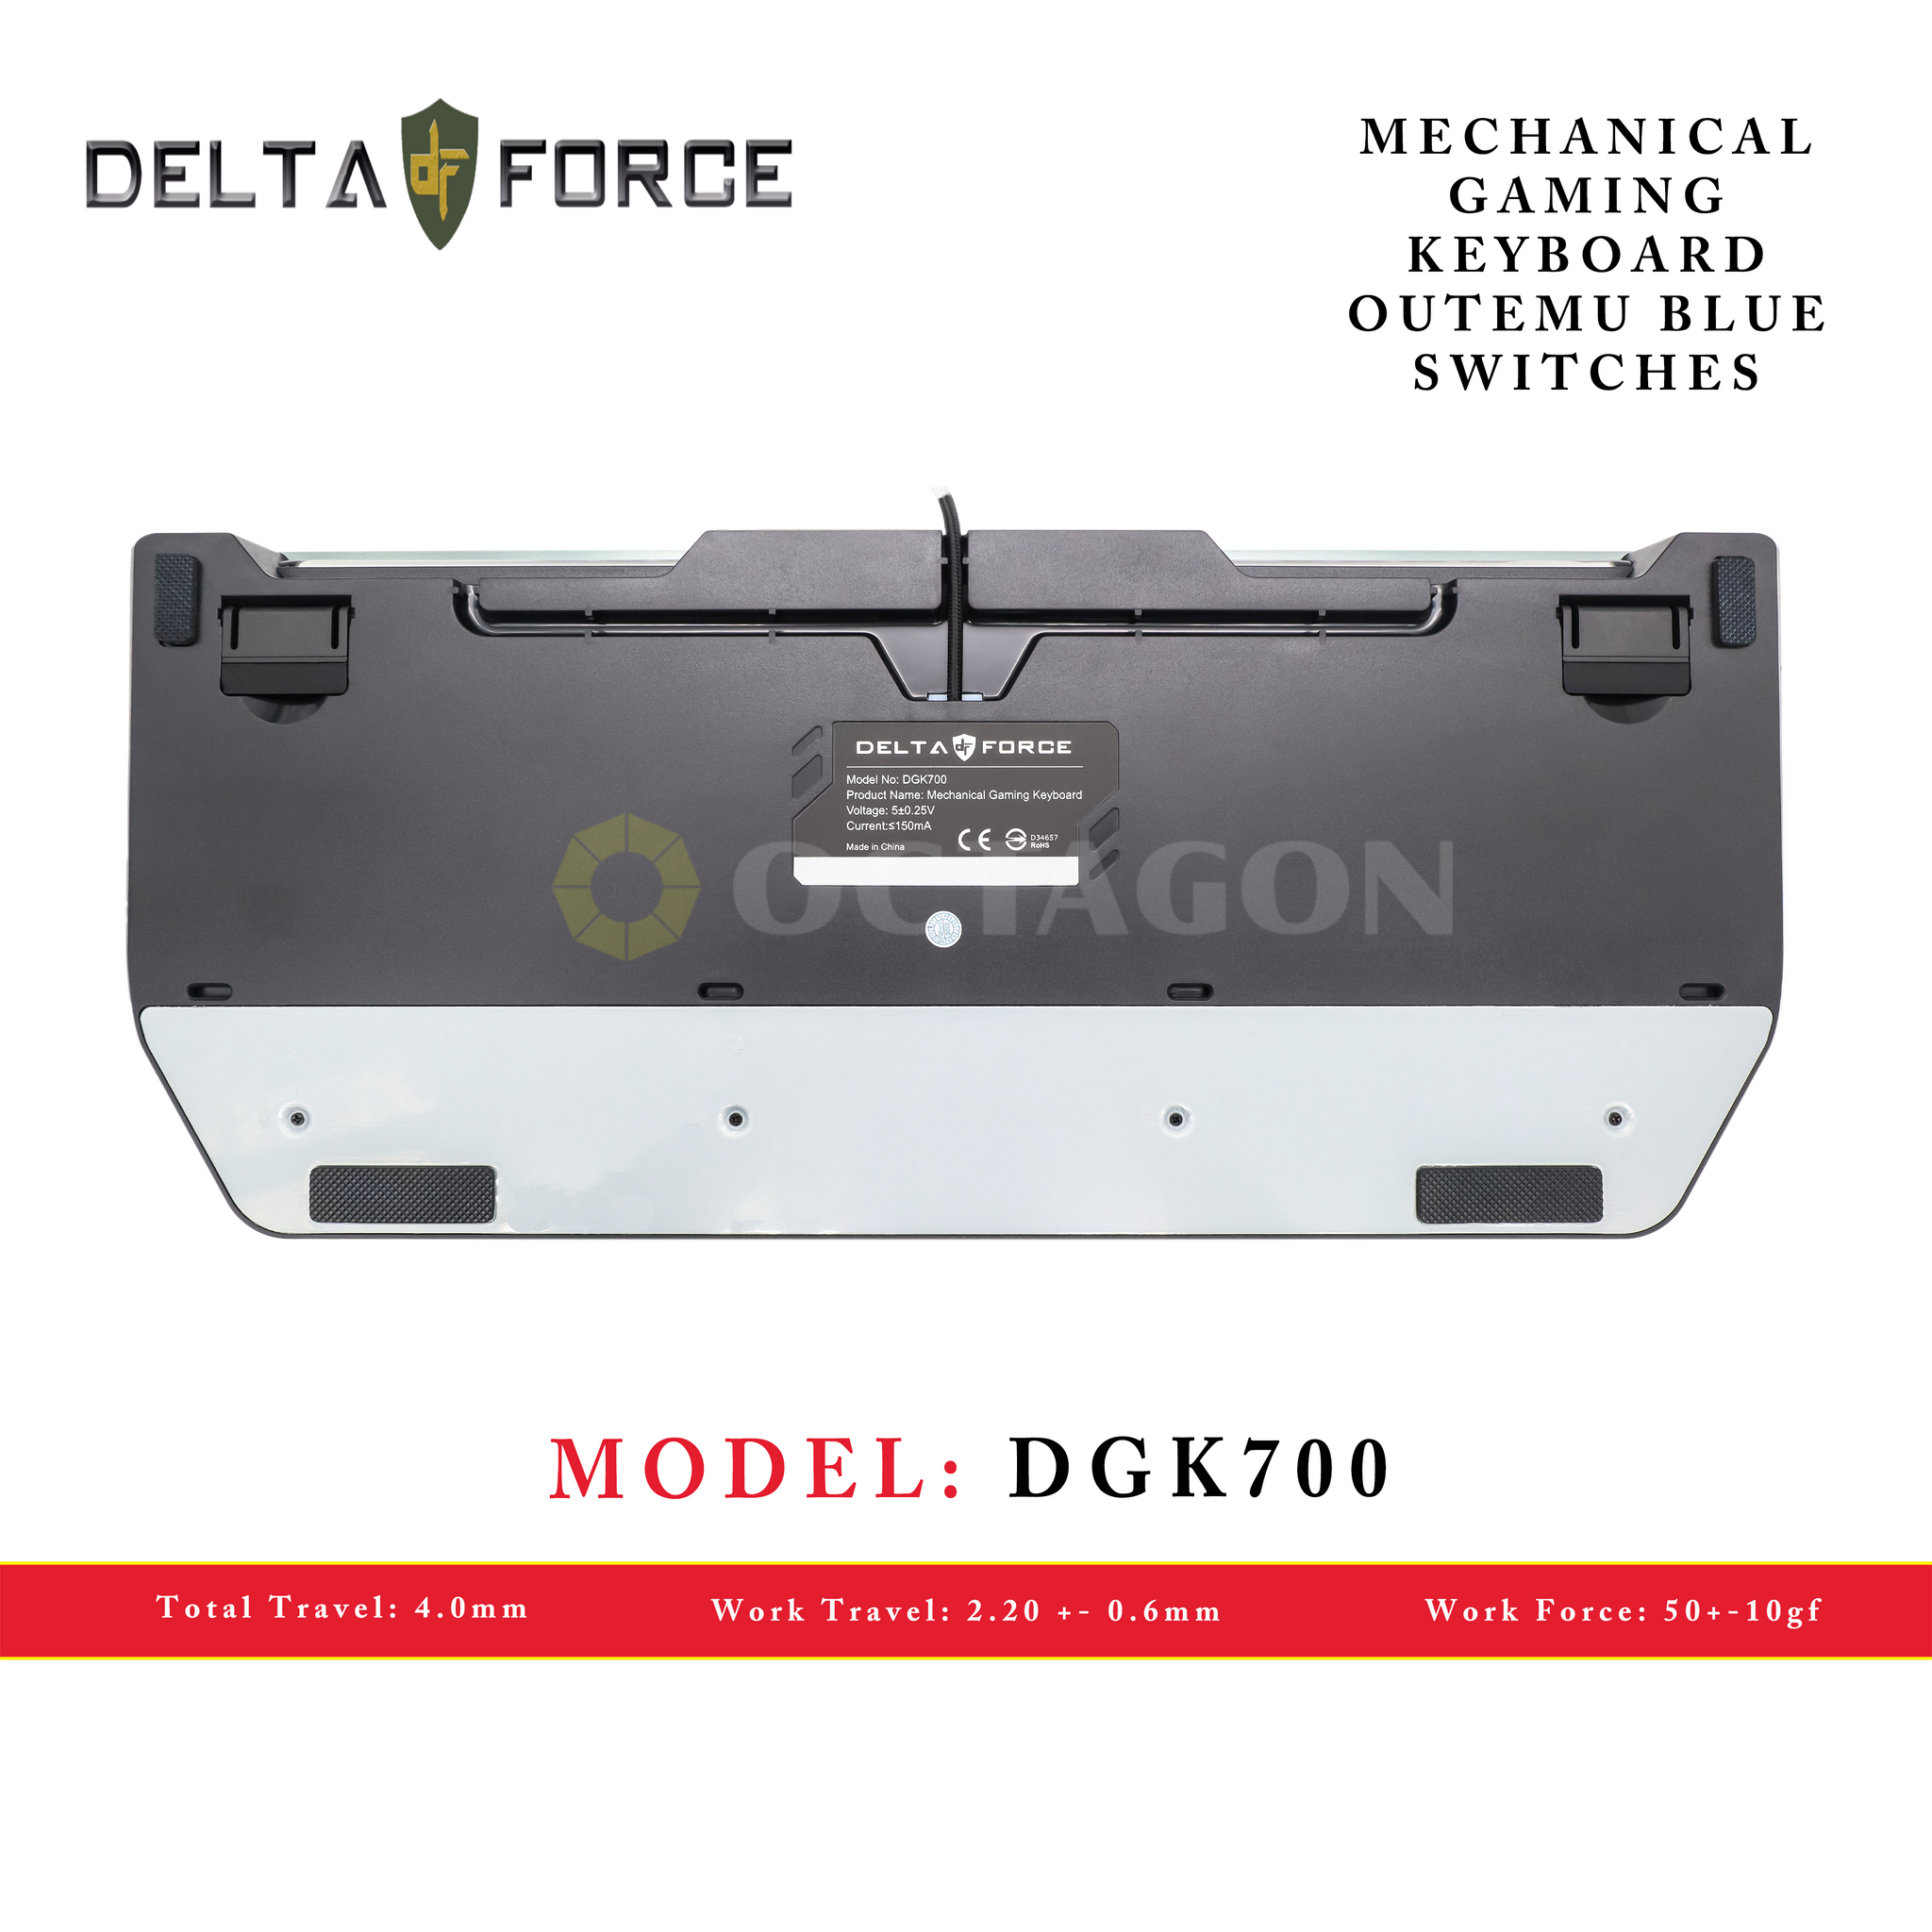 DELTA FORCE DGK700 USB GAMING KEYBOARD MECHANICAL RGB 104 KEYS